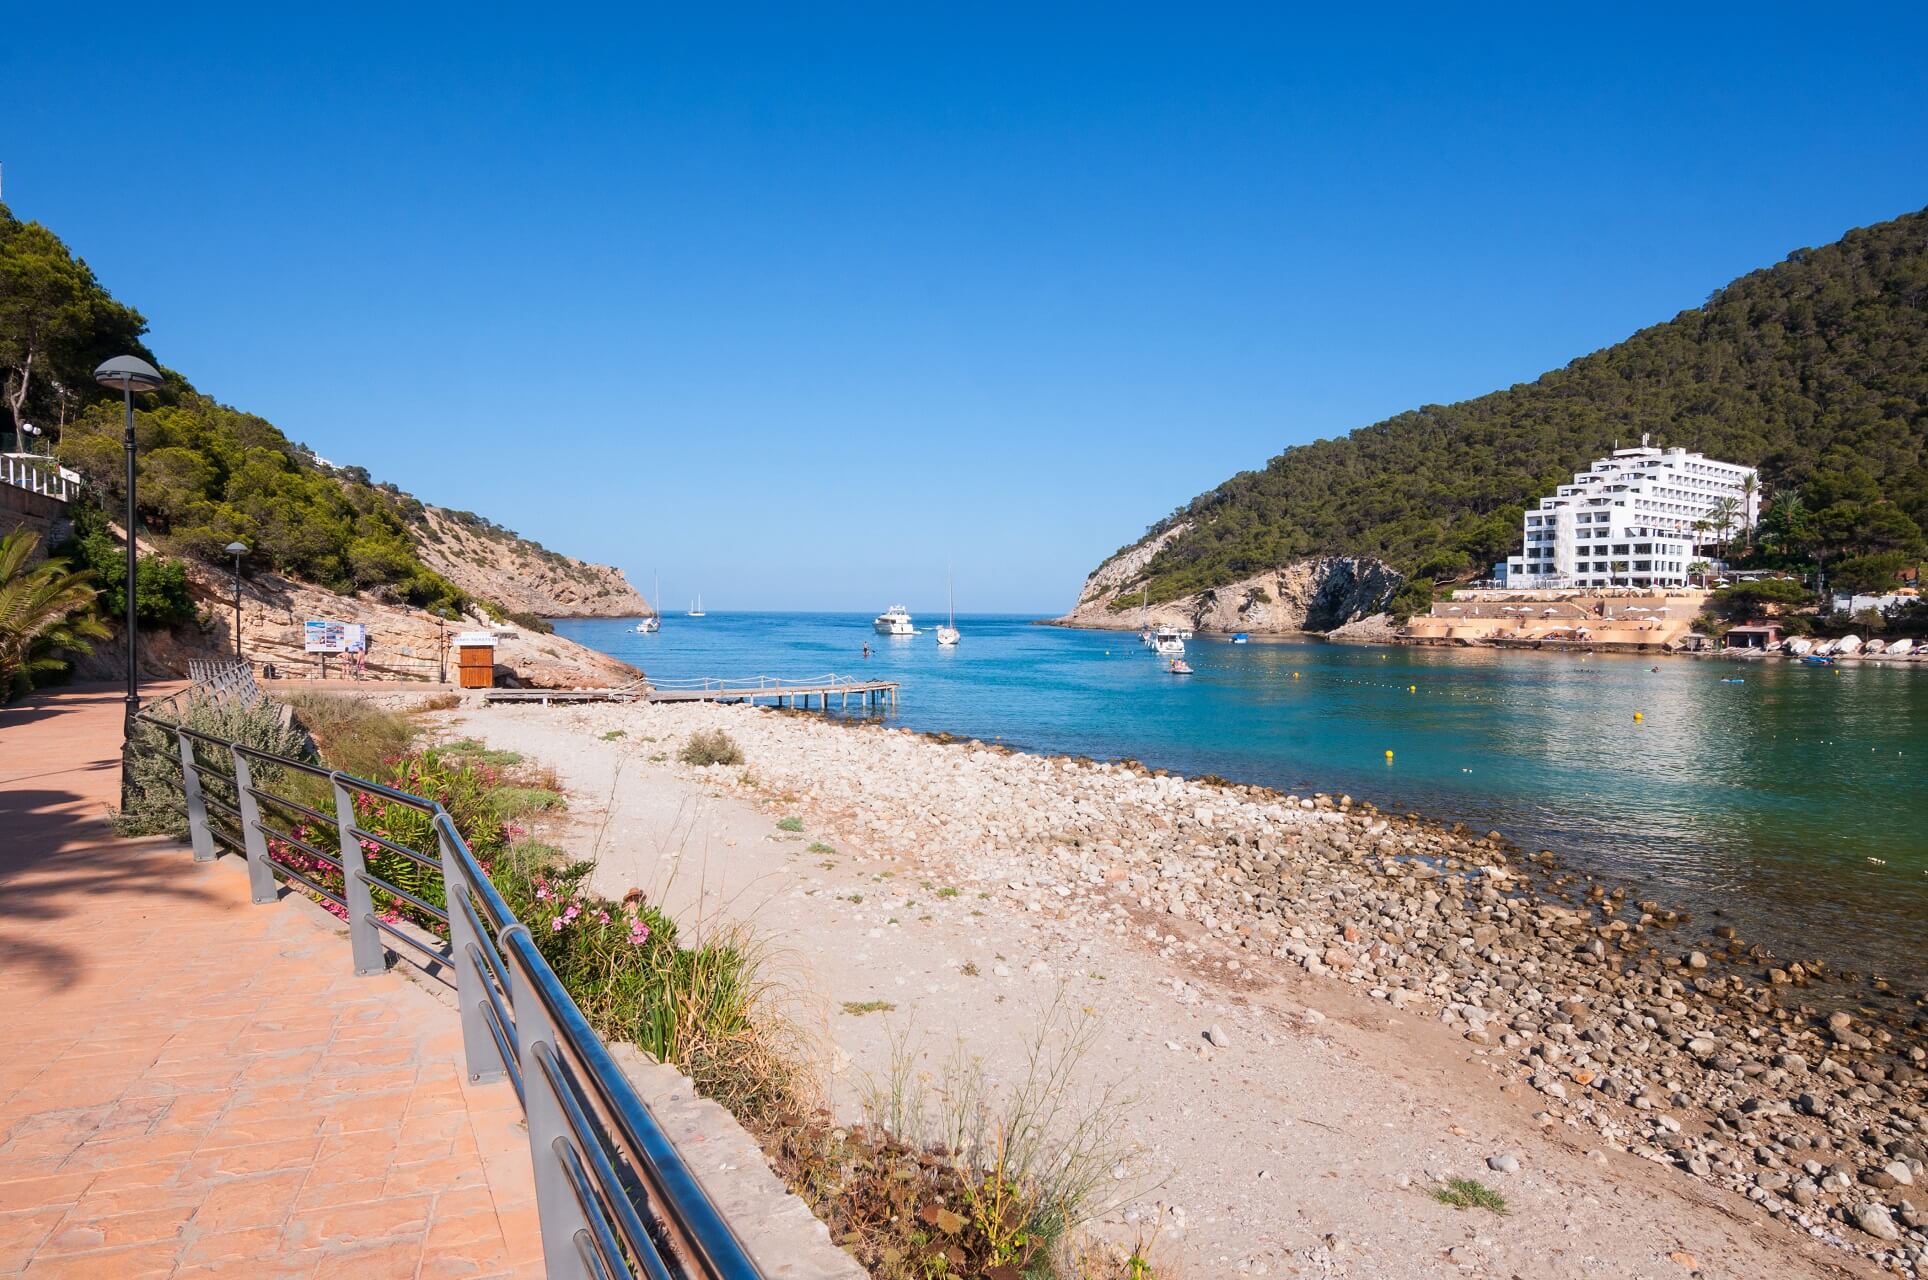 Der Strand Cala Llonga auf Ibiza in Spanien liegt geschützt in einer Bucht